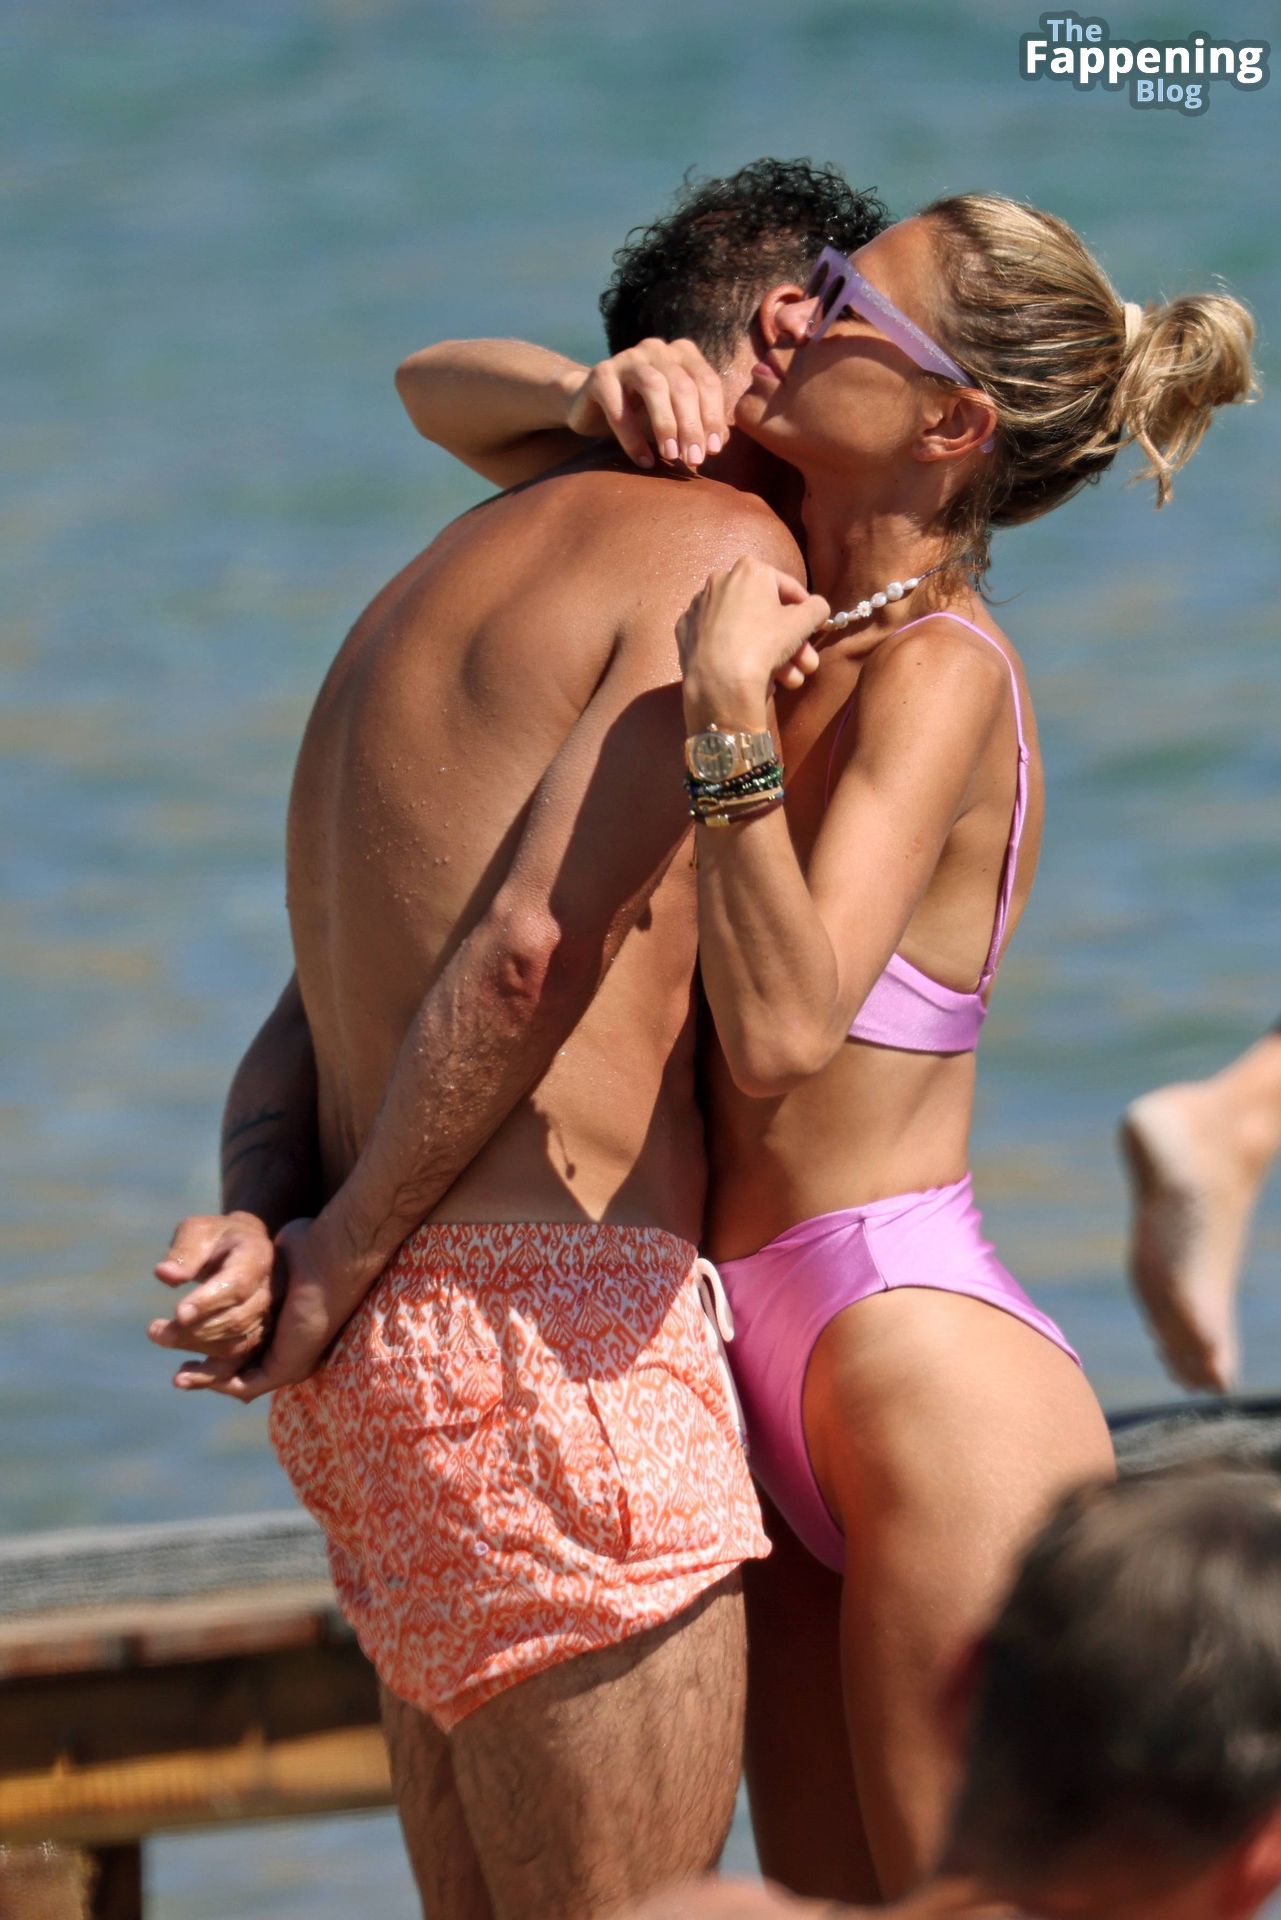 Carla Pereyra Enjoys a Fun Vacation in Ibiza (17 Photos)